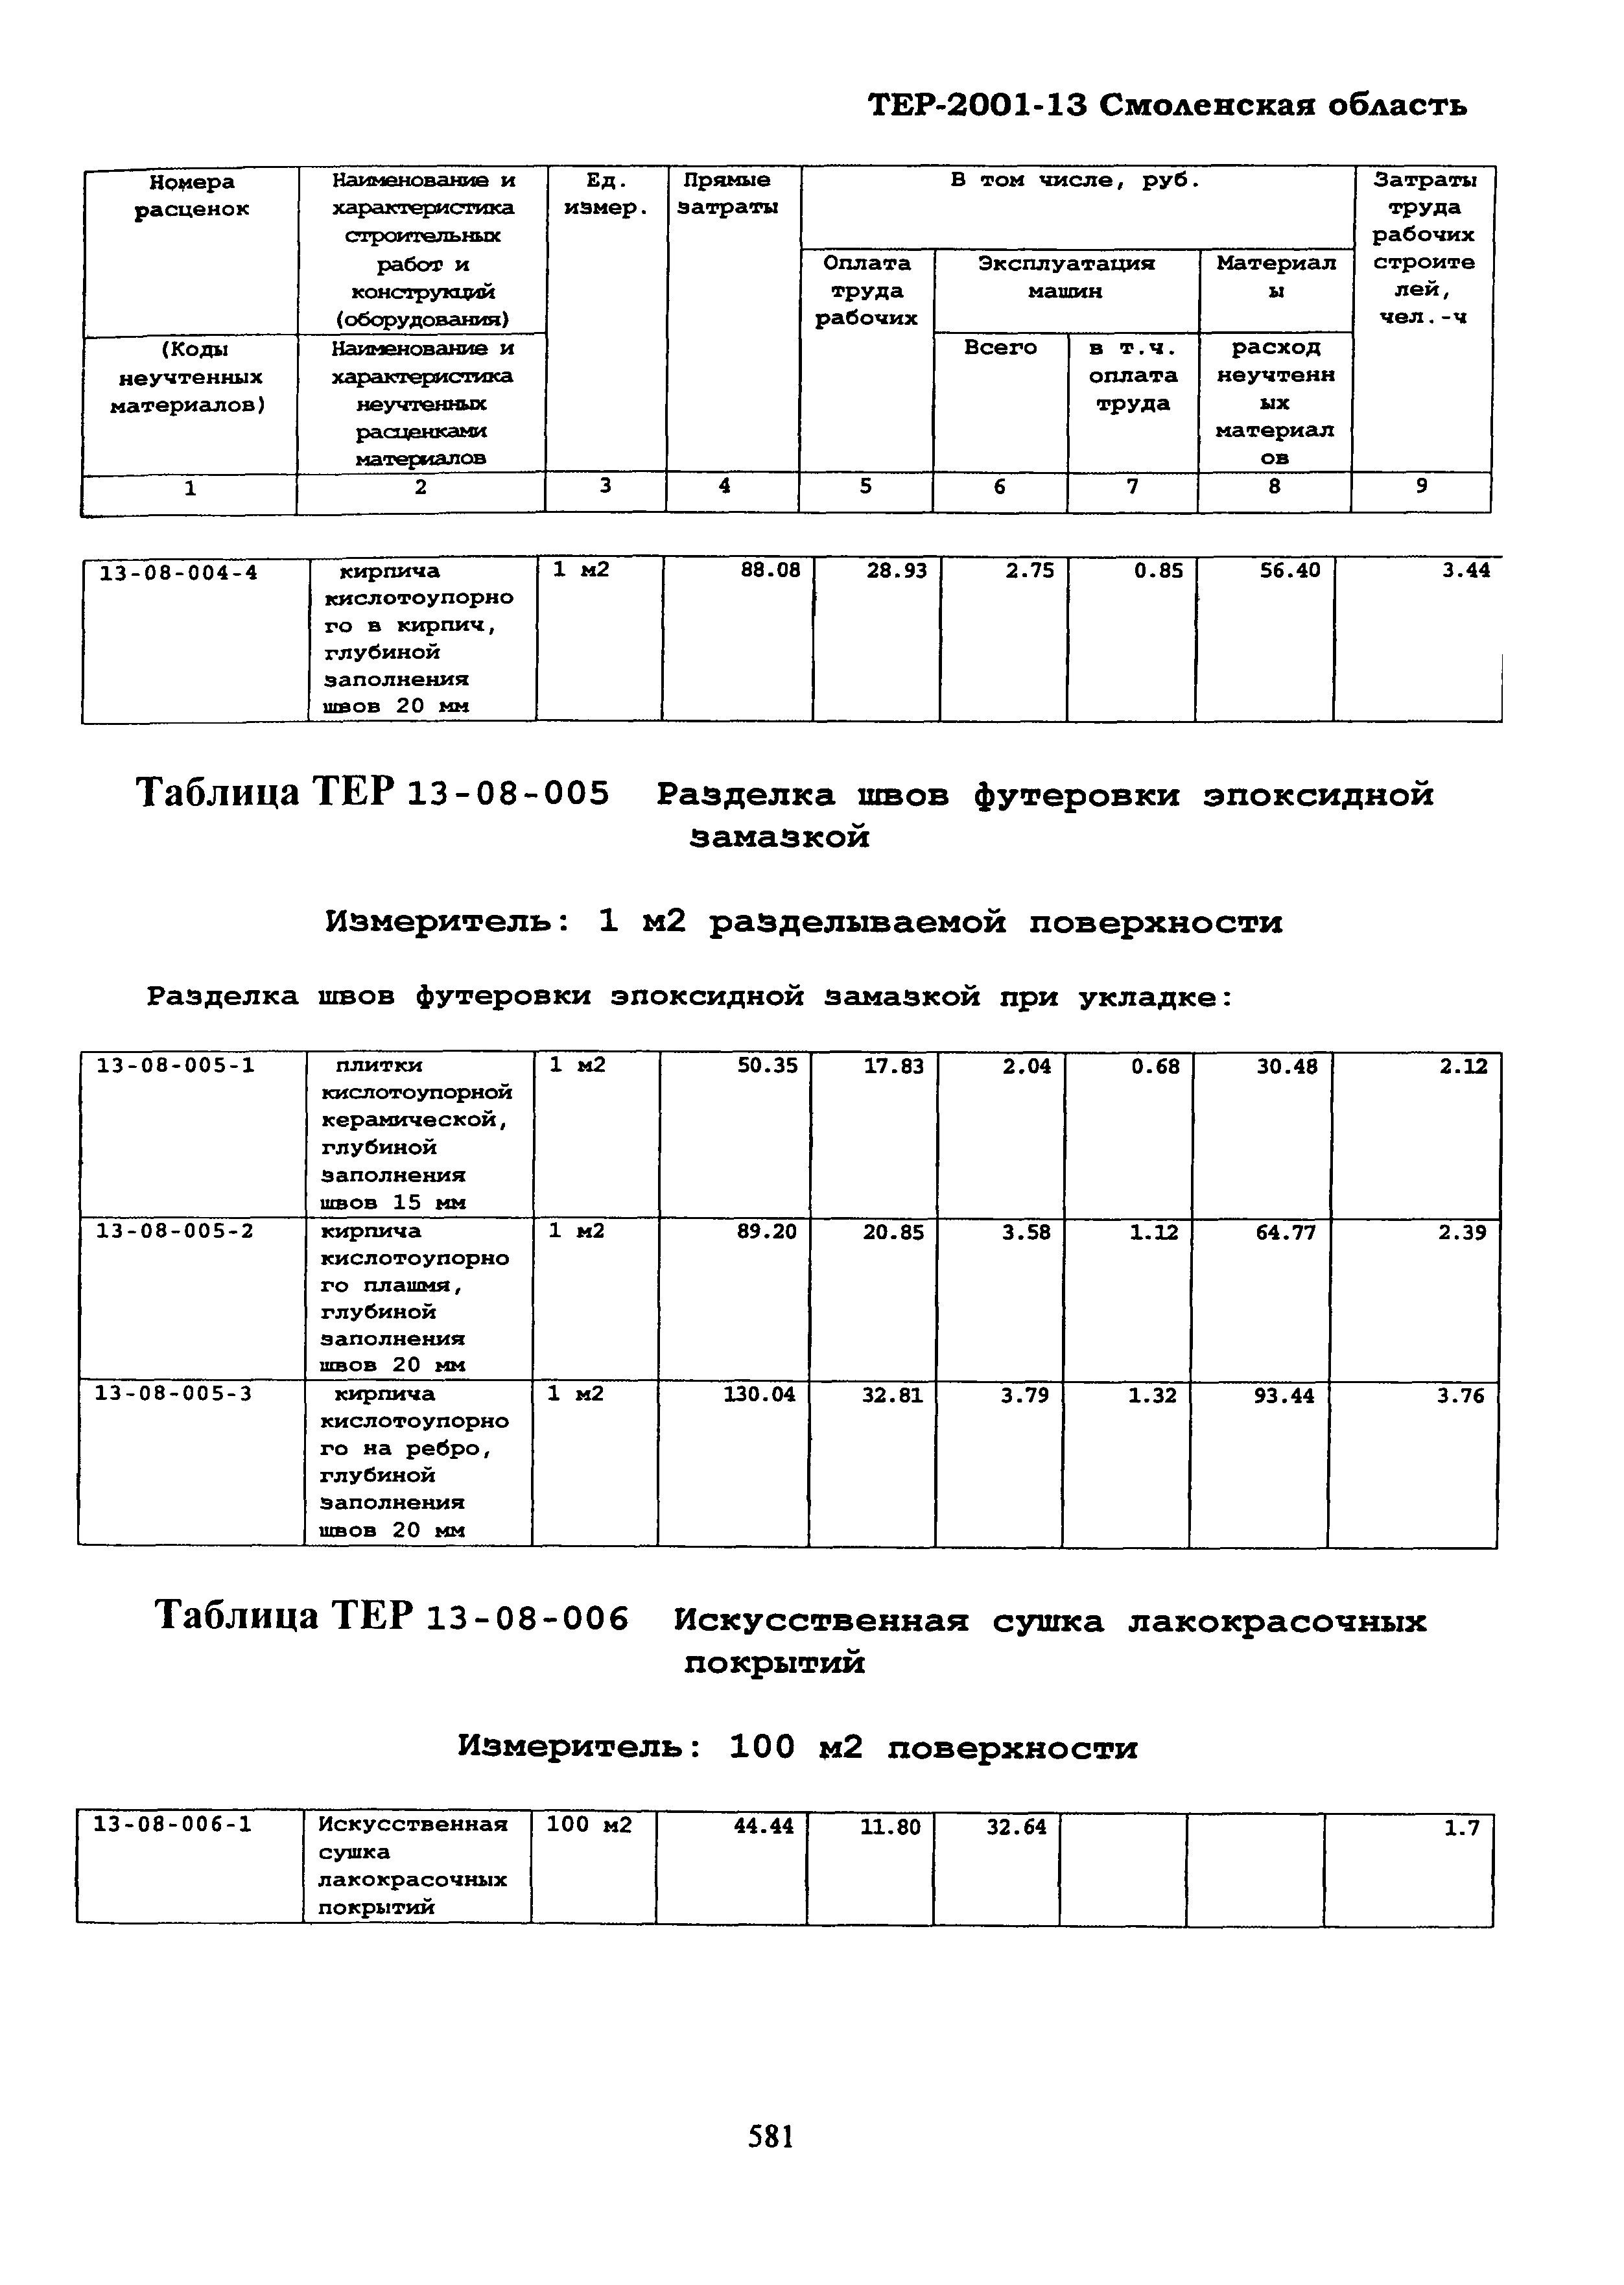 ТЕР Смоленская область 2001-13